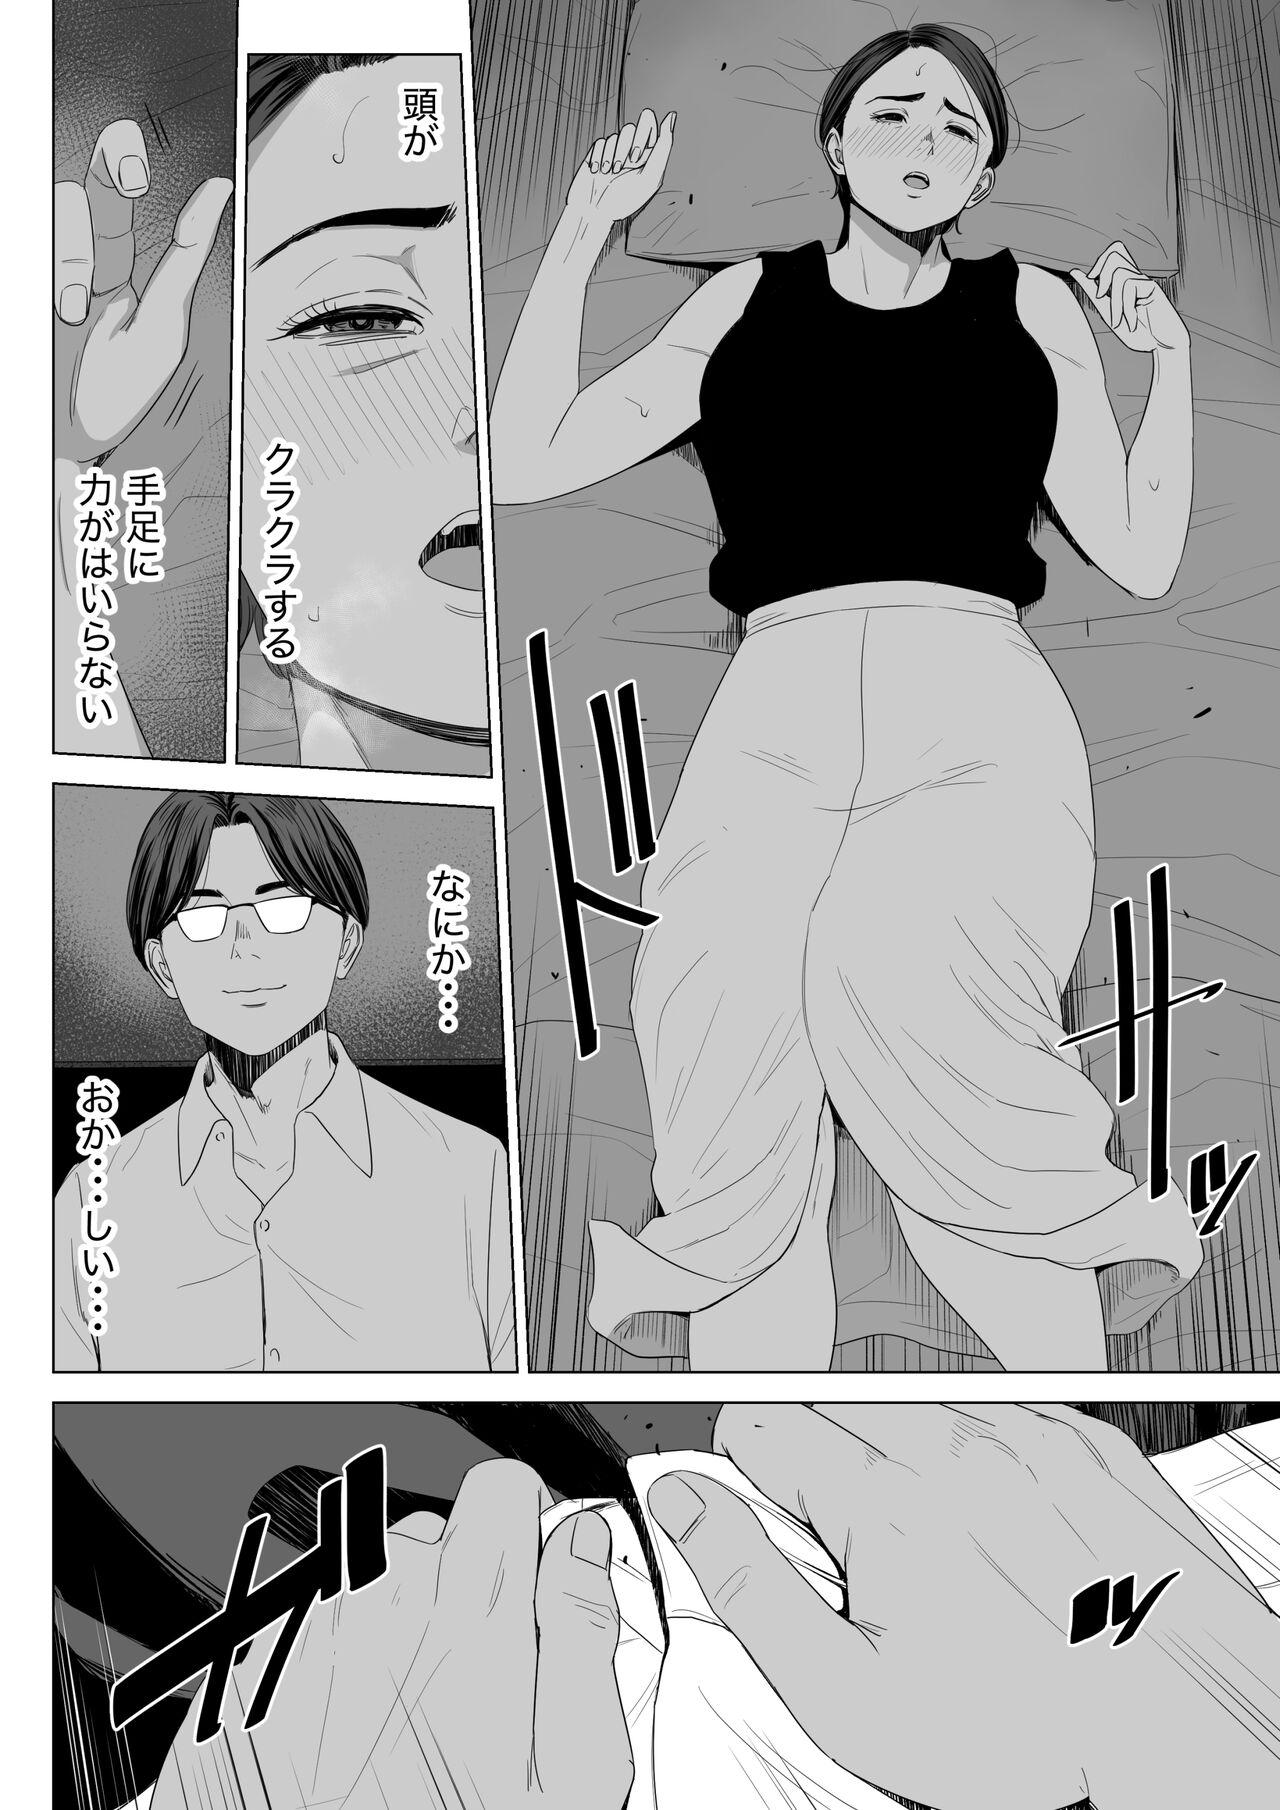 Oral Porn Gibo no tsukaeru karada. - Original Anal Porn - Page 11